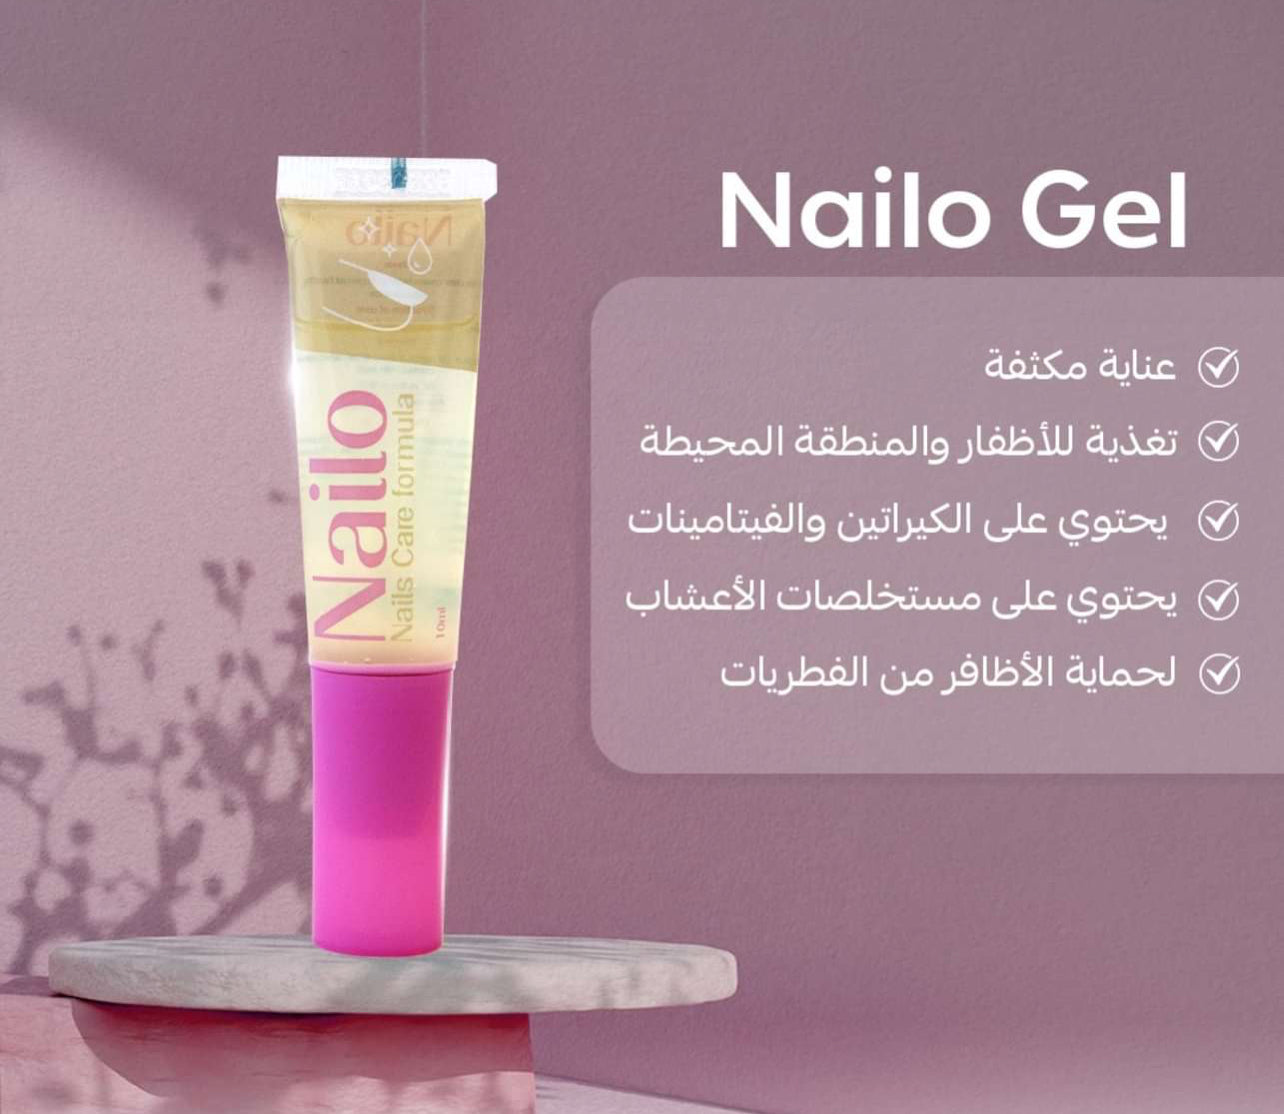 Nailo gel 
Nail care 
Nail pulish 
تغذية الأظافر 
تطويل الأظافر 
